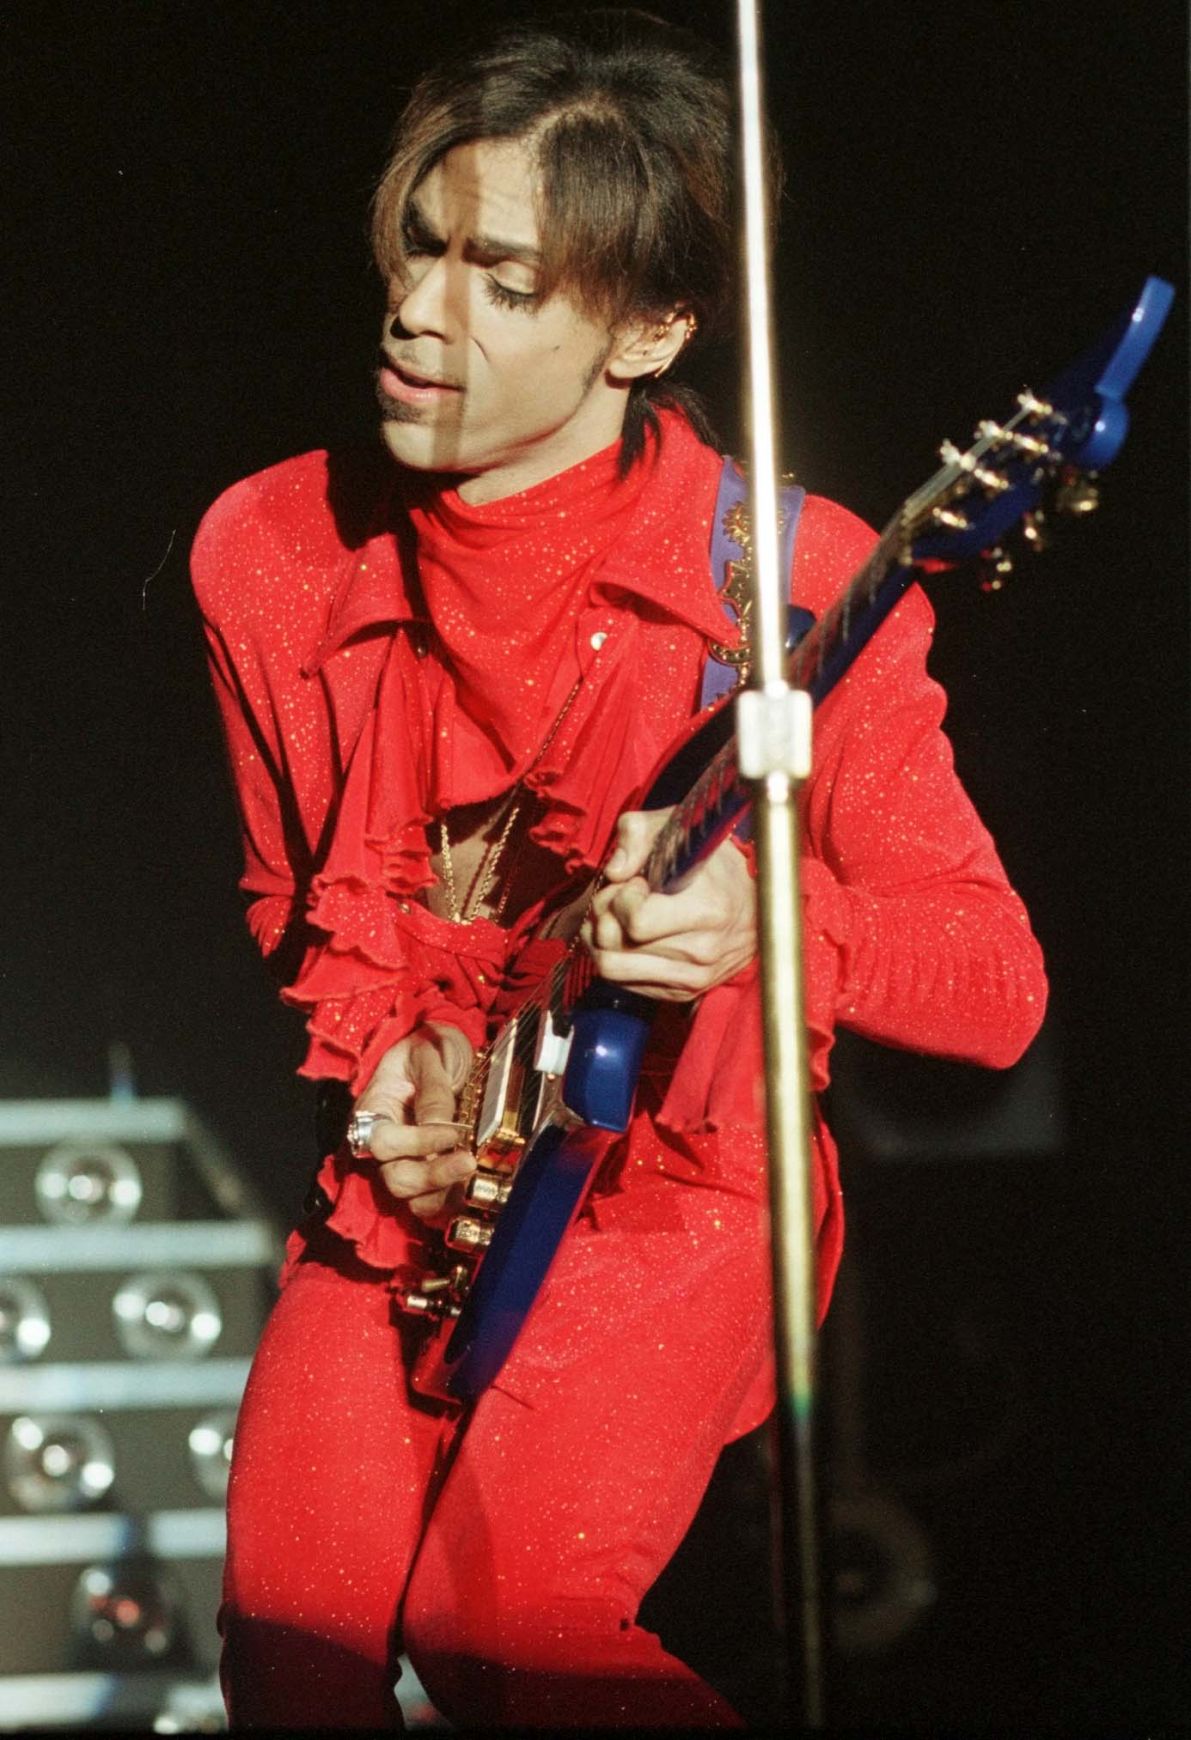 Prince confirmed dead at 57 | Headliners | pressofatlanticcity.com